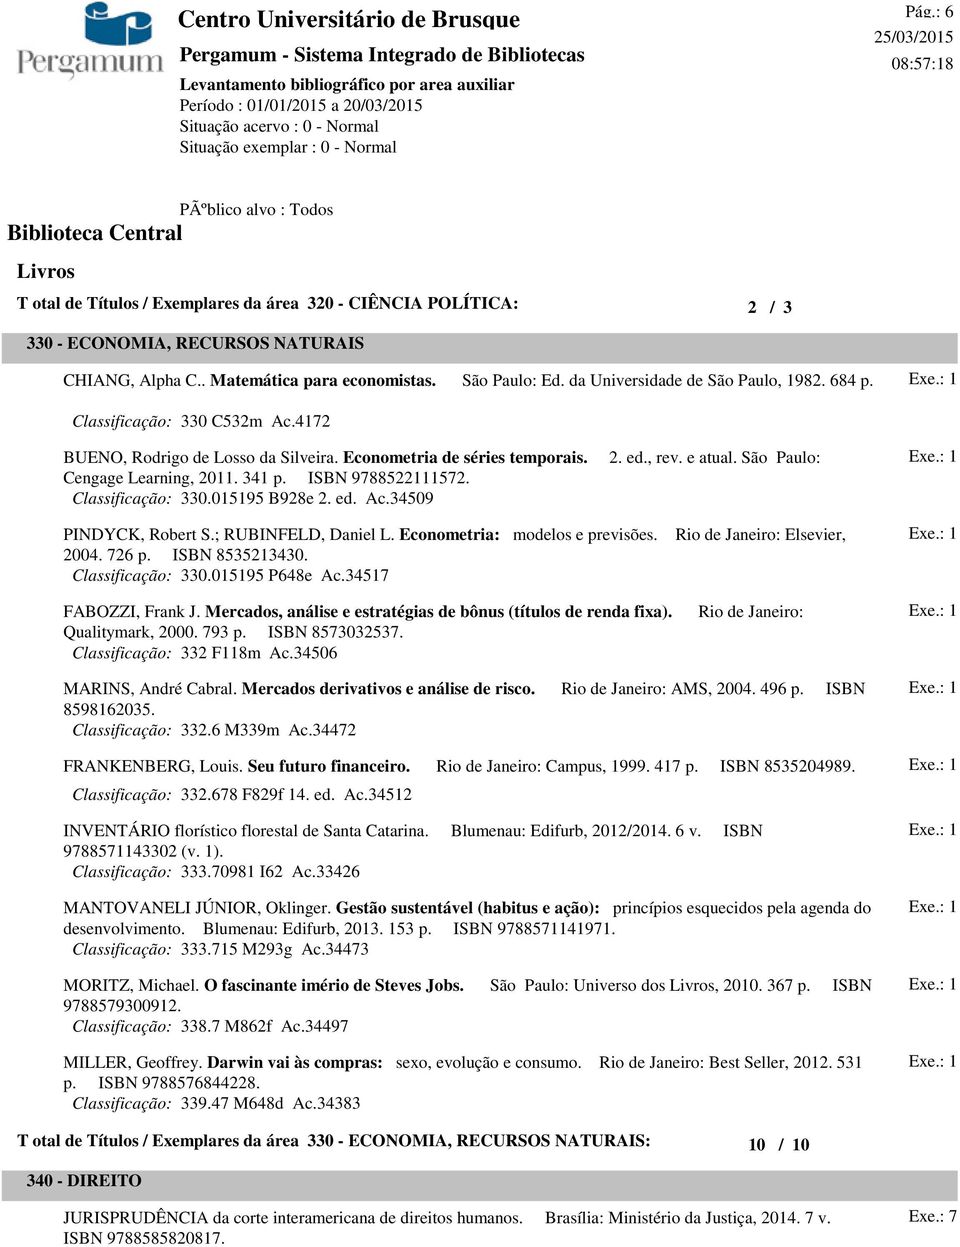 Classificação: 330.015195 B928e 2. ed. Ac.34509 2. ed., rev. e atual. São Paulo: PINDYCK, Robert S.; RUBINFELD, Daniel L. Econometria: modelos e previsões. 2004. 726 p. ISBN 8535213430.